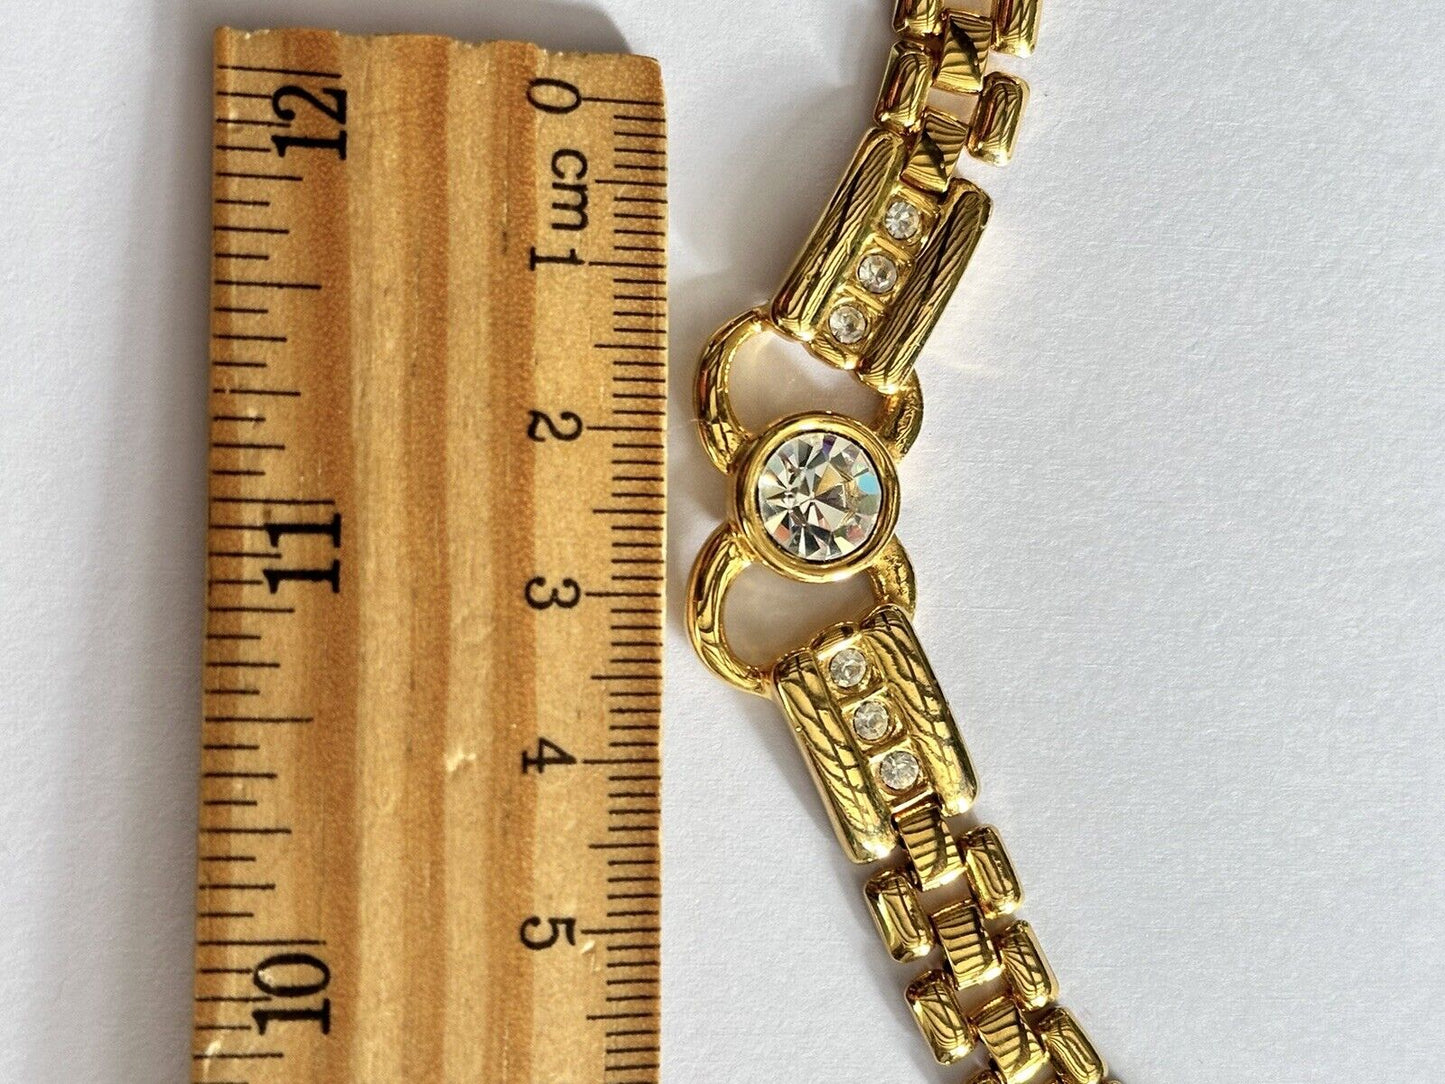 Vintage 1980s Gold Plated Diamanté Necklace